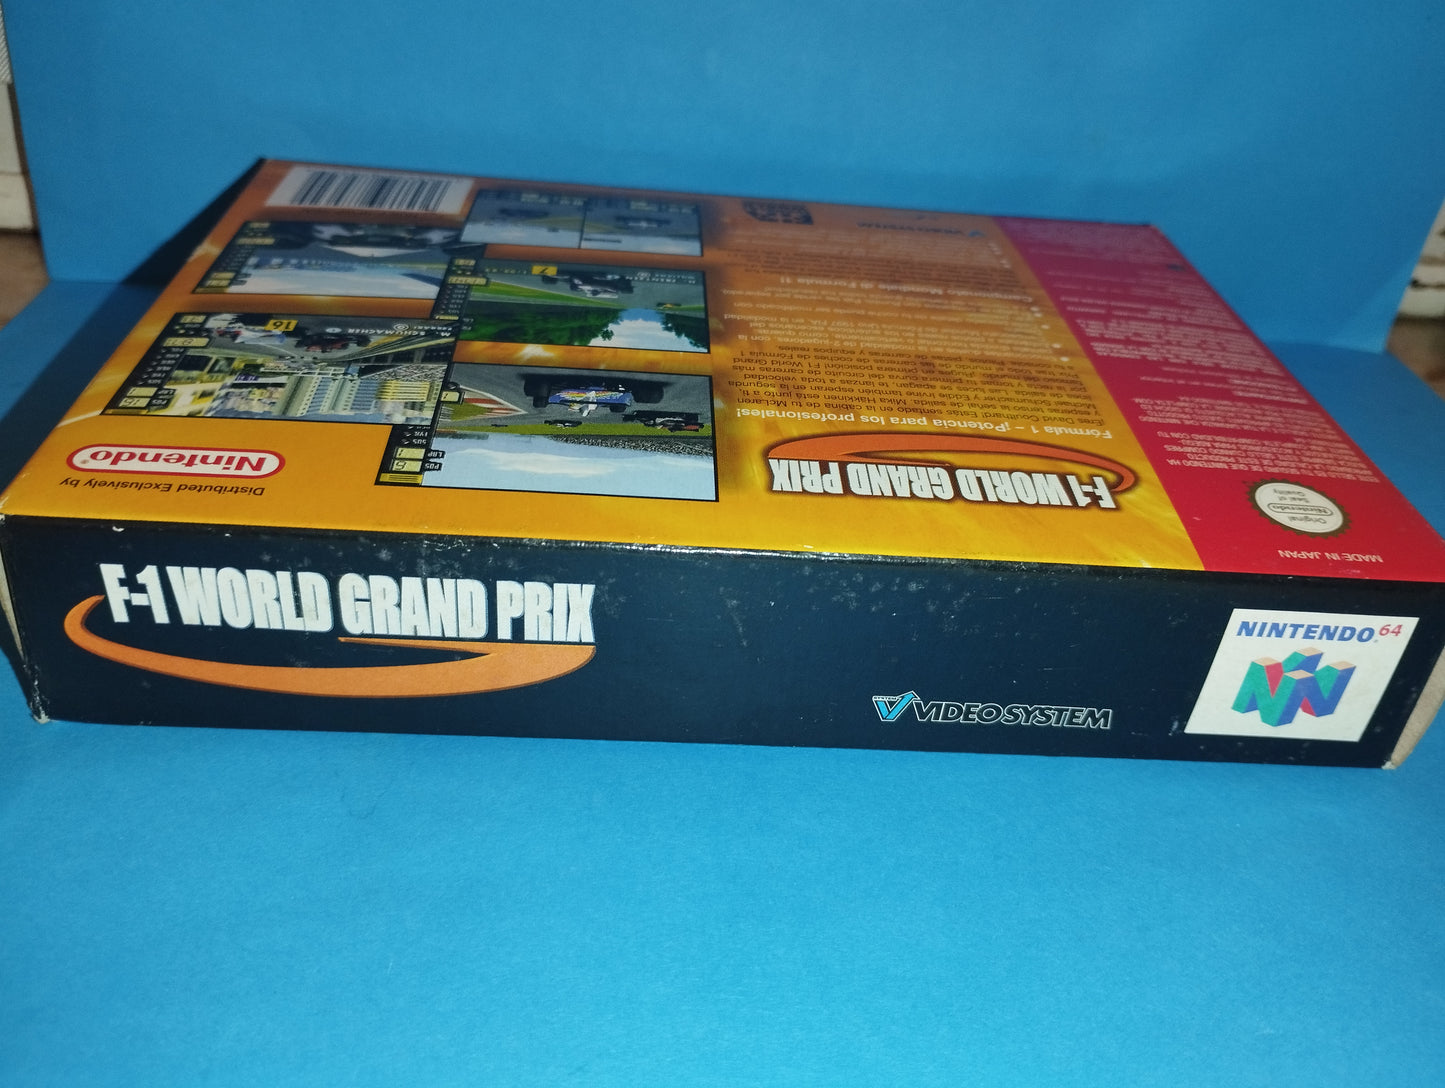 Nintendo 64 Gioco F-1 Wordl Grand Prix
Edito nel 1998